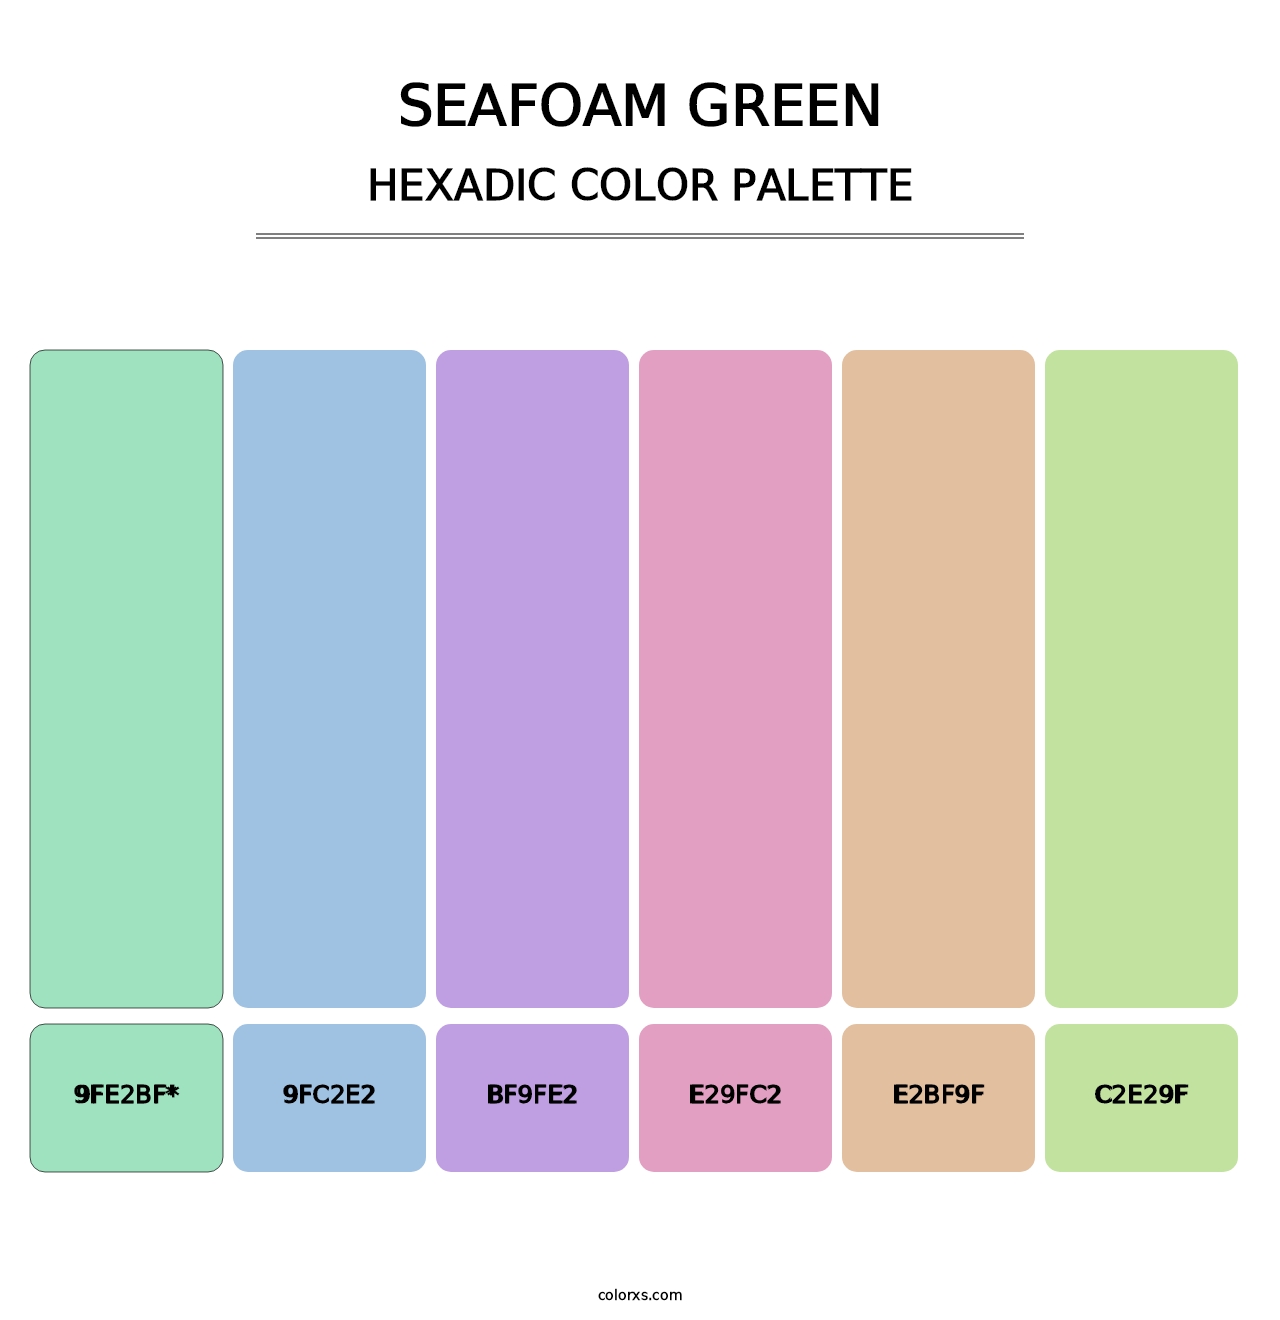 Seafoam Green - Hexadic Color Palette